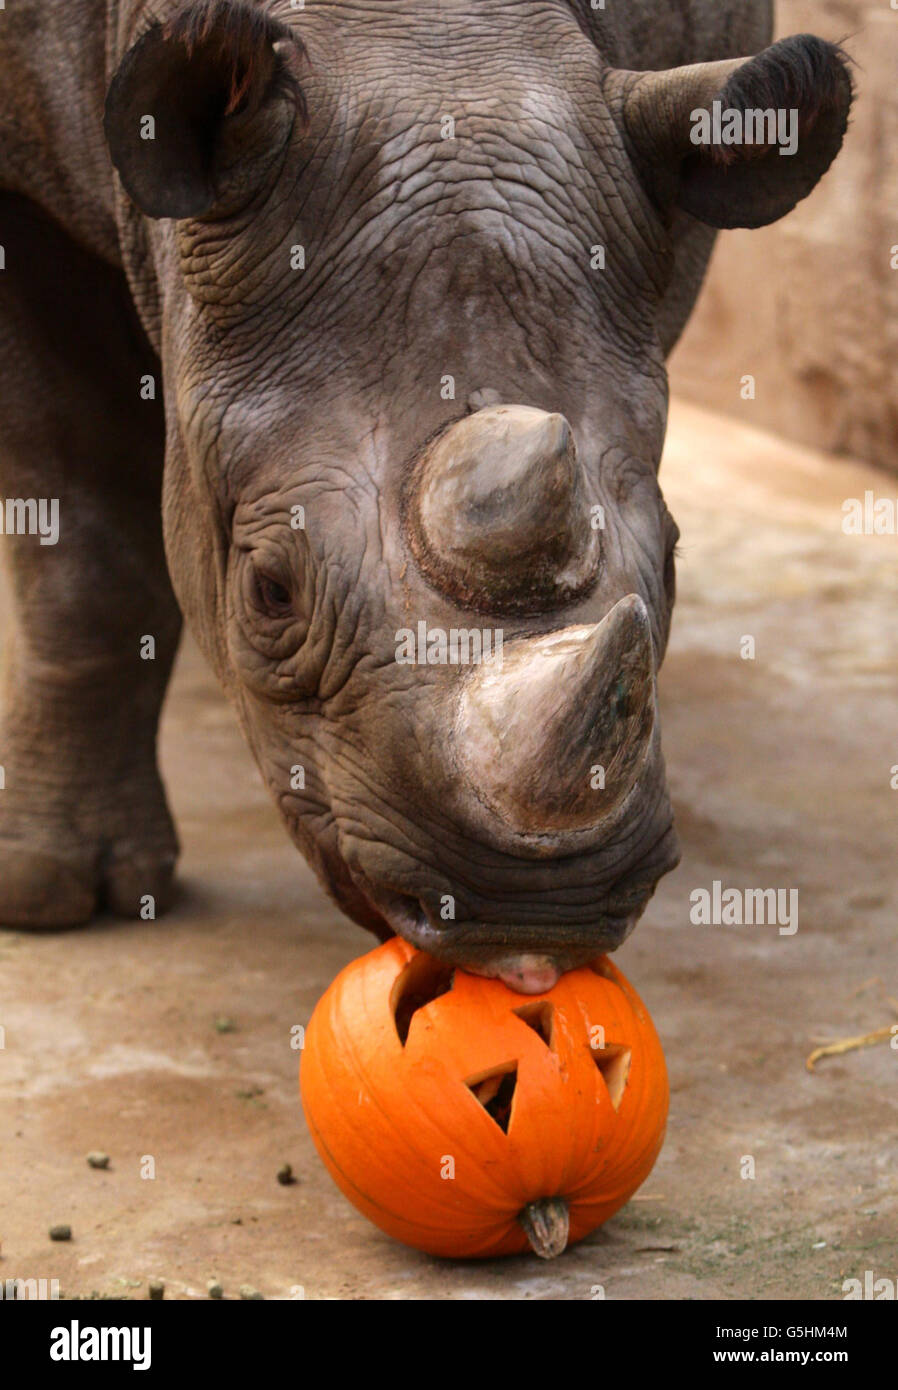 Rinocerontes disfrutando de un regalo de halloween. EMA Elsa a Black Rhino en el zoológico de Chester disfruta de una calabaza como un regalo de Halloween. Foto de stock